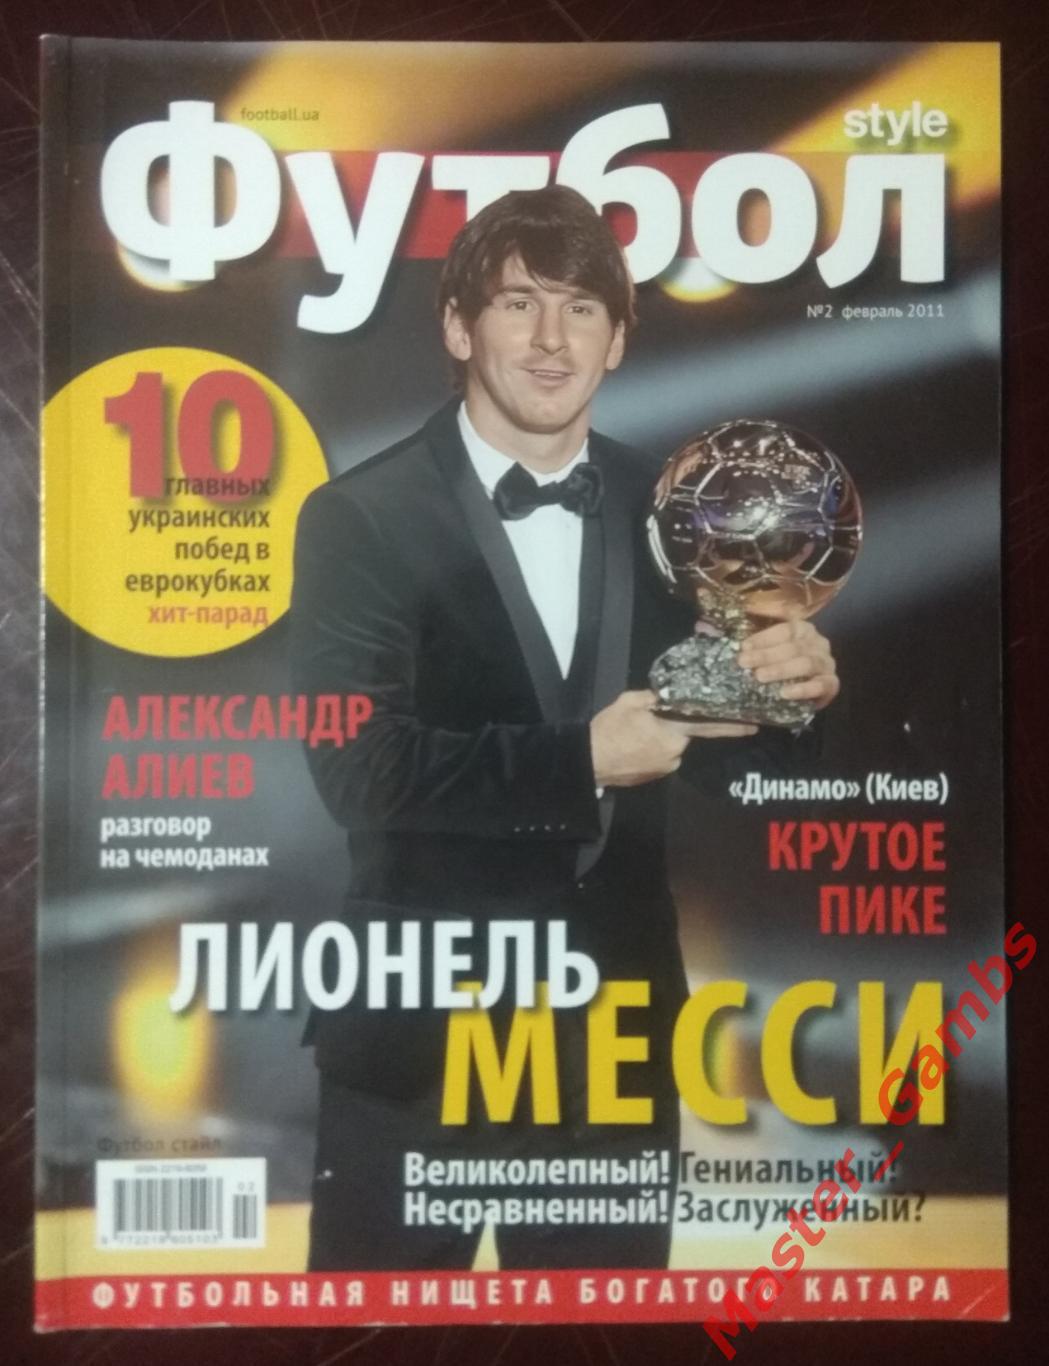 Журнал Футбол style (стайл) #2 февраль 2011 Киев